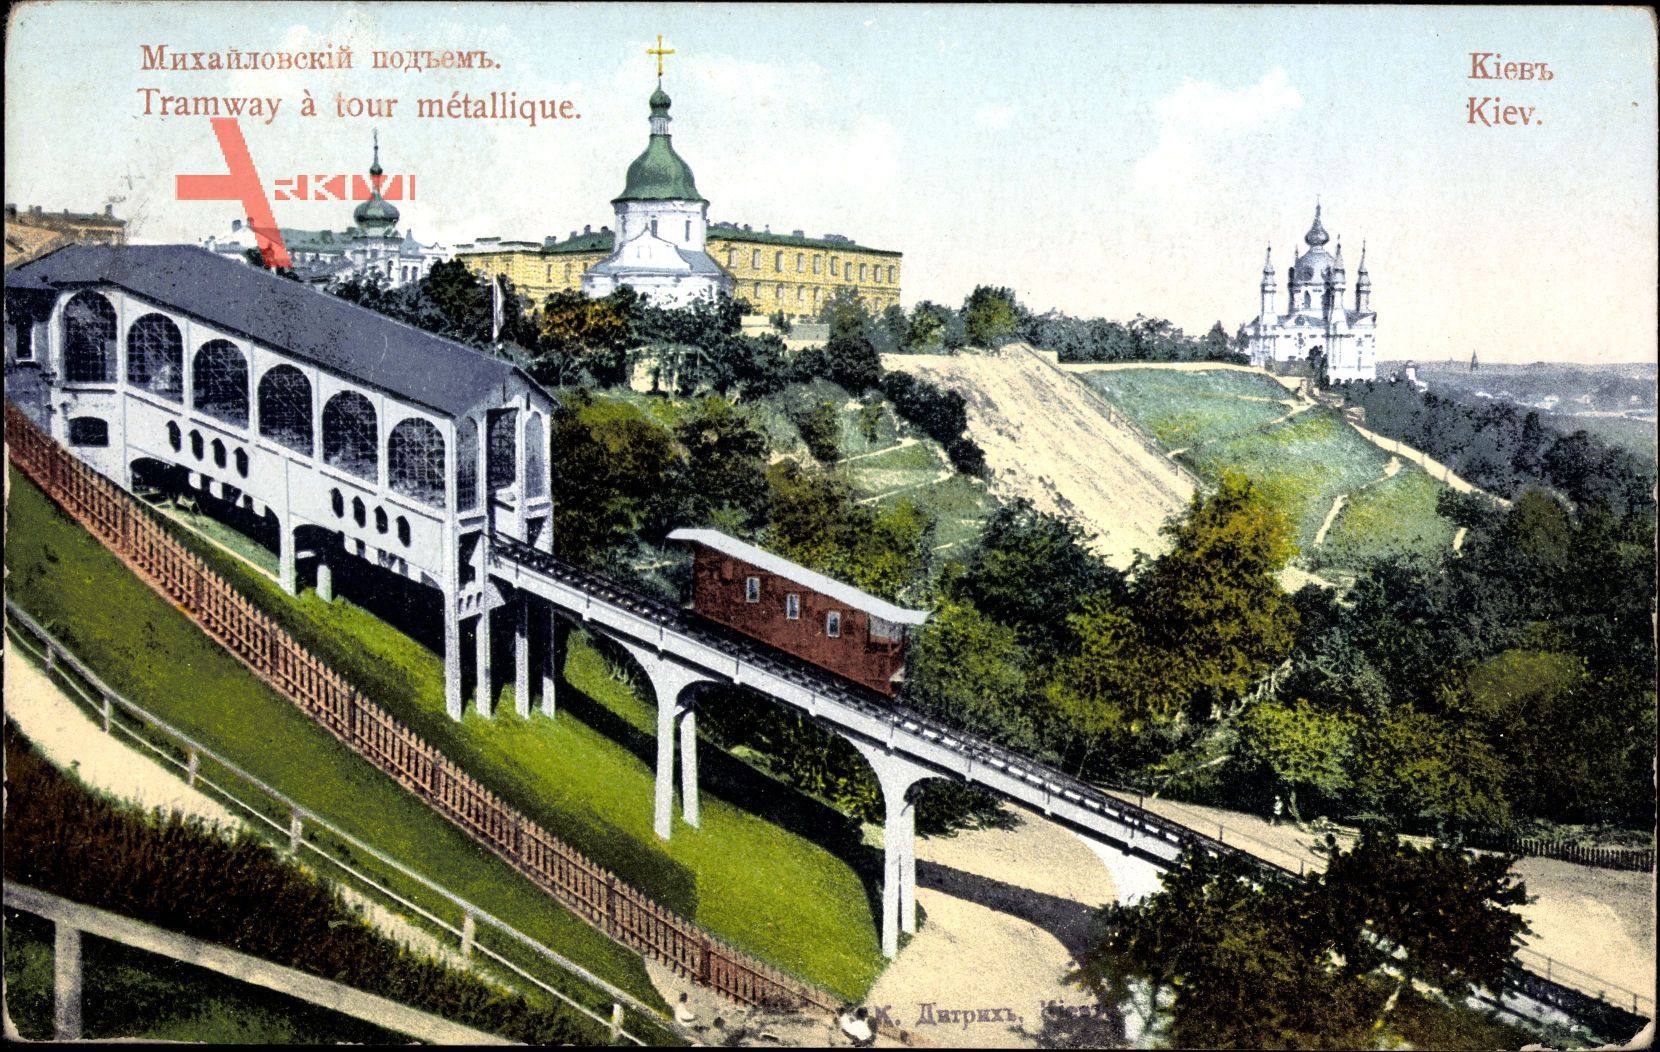 Kiew Ukraine, Blick auf die Seilbahn, Kirche, metallischer Turm